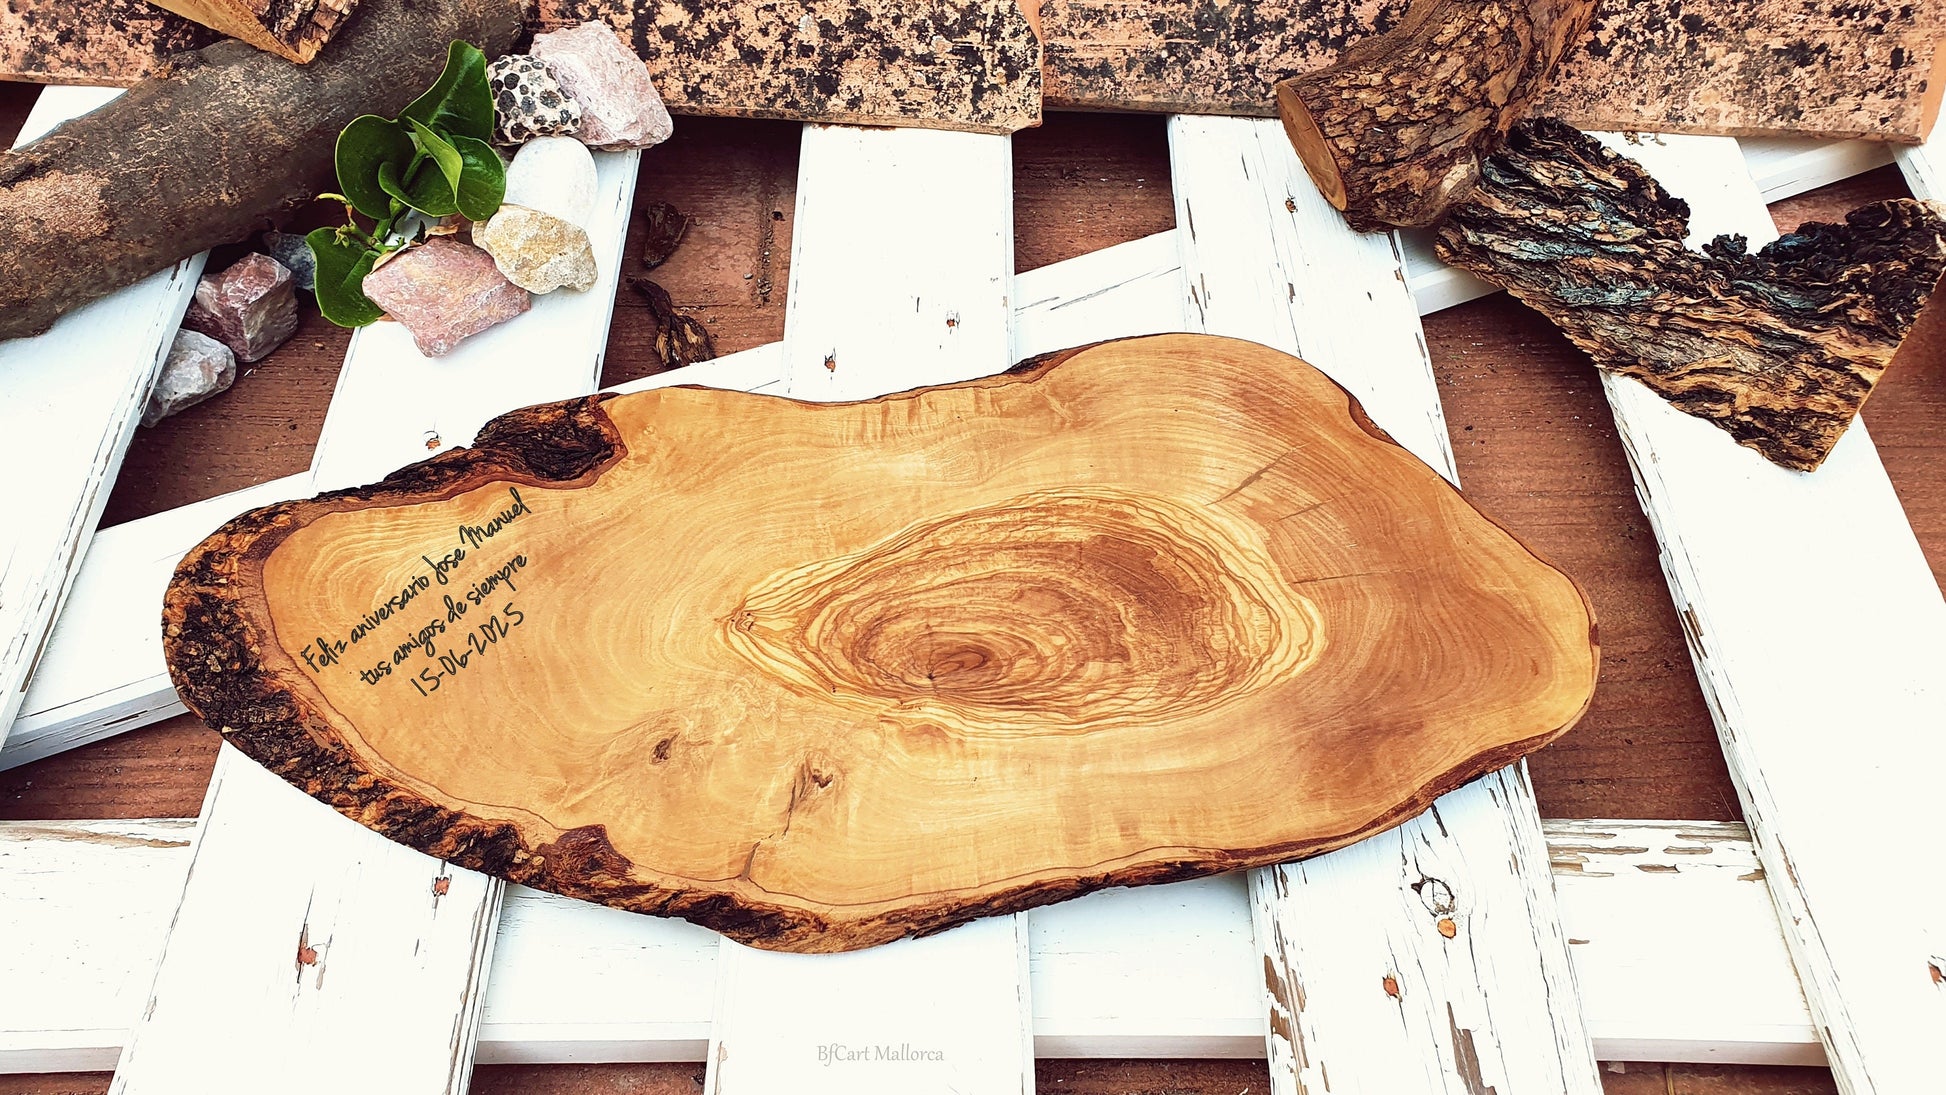 Live Edge Olive Wood Cutting Board